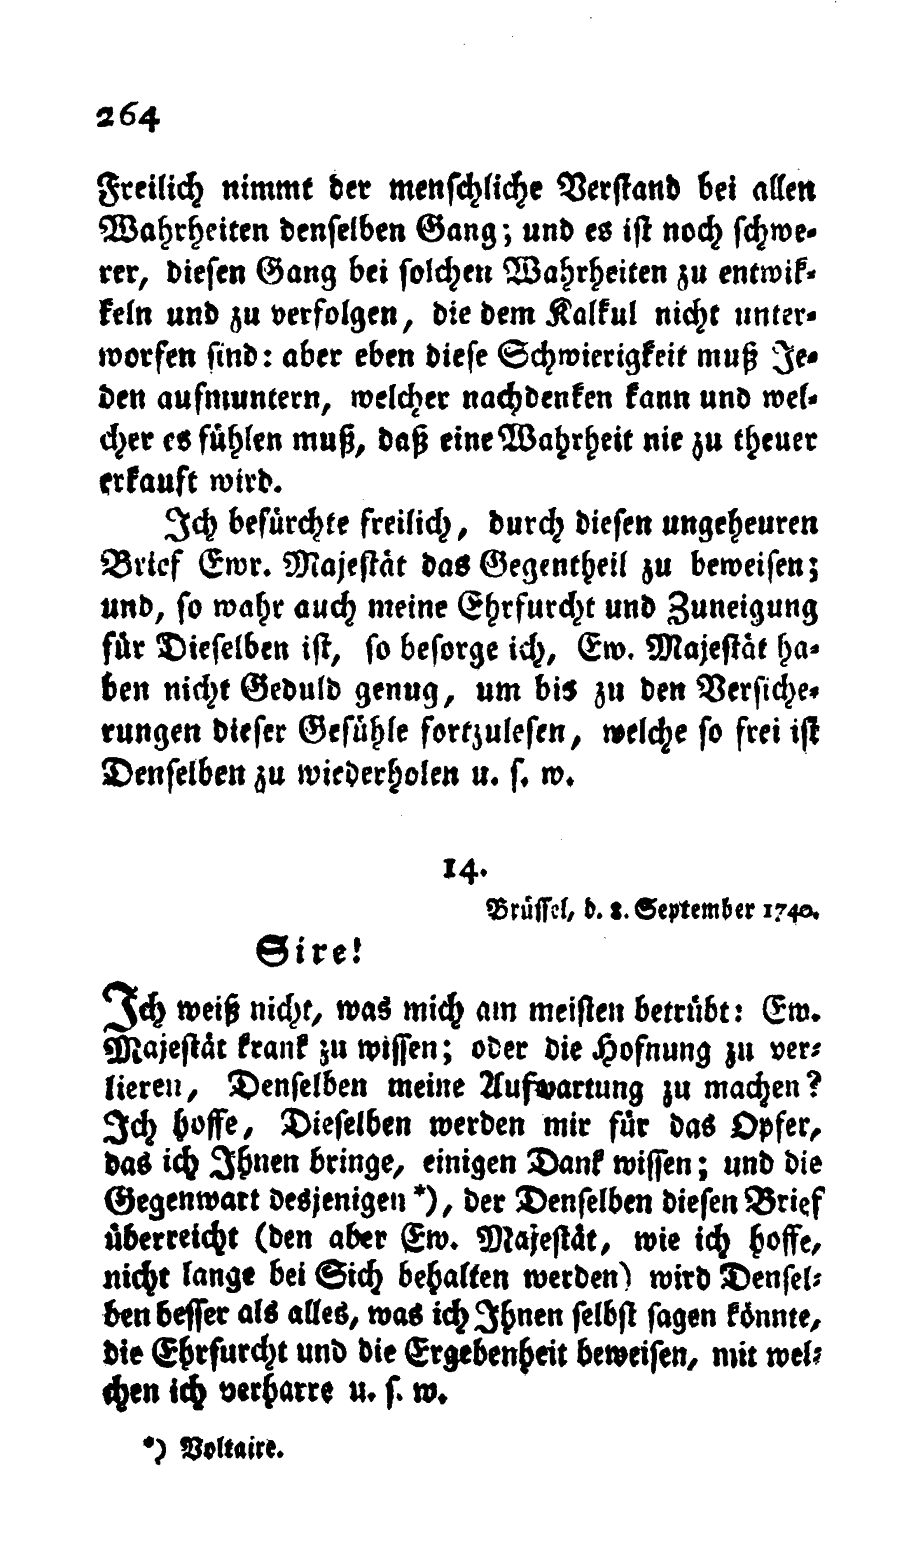 S. 264, Obj. 2